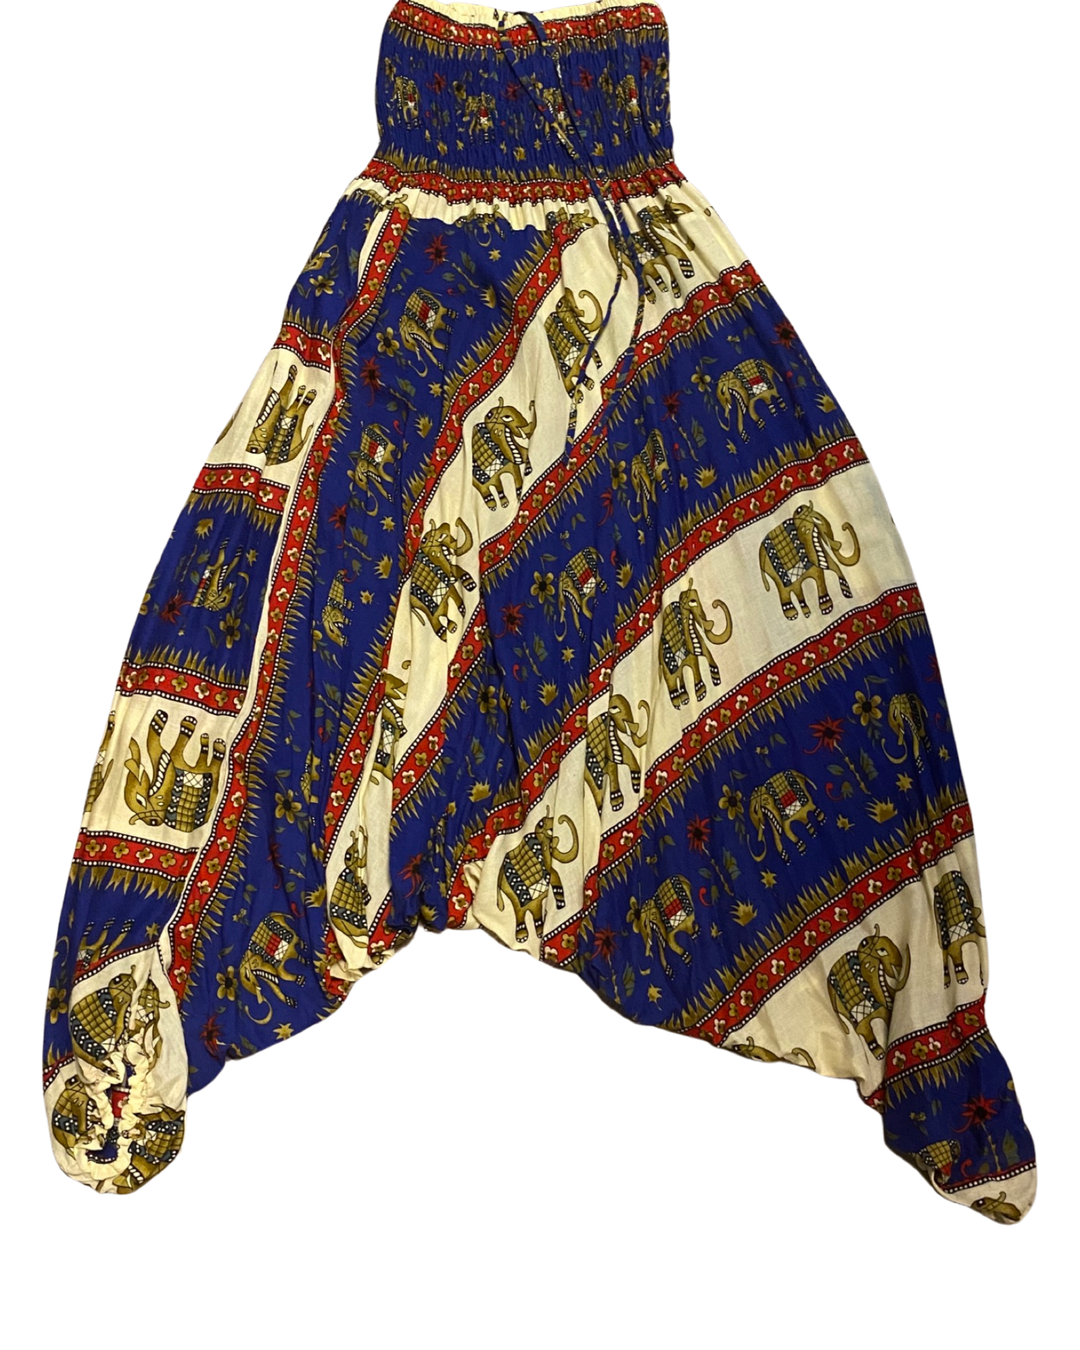 Jumpsuit Harem Pants with Elephant Walk Print